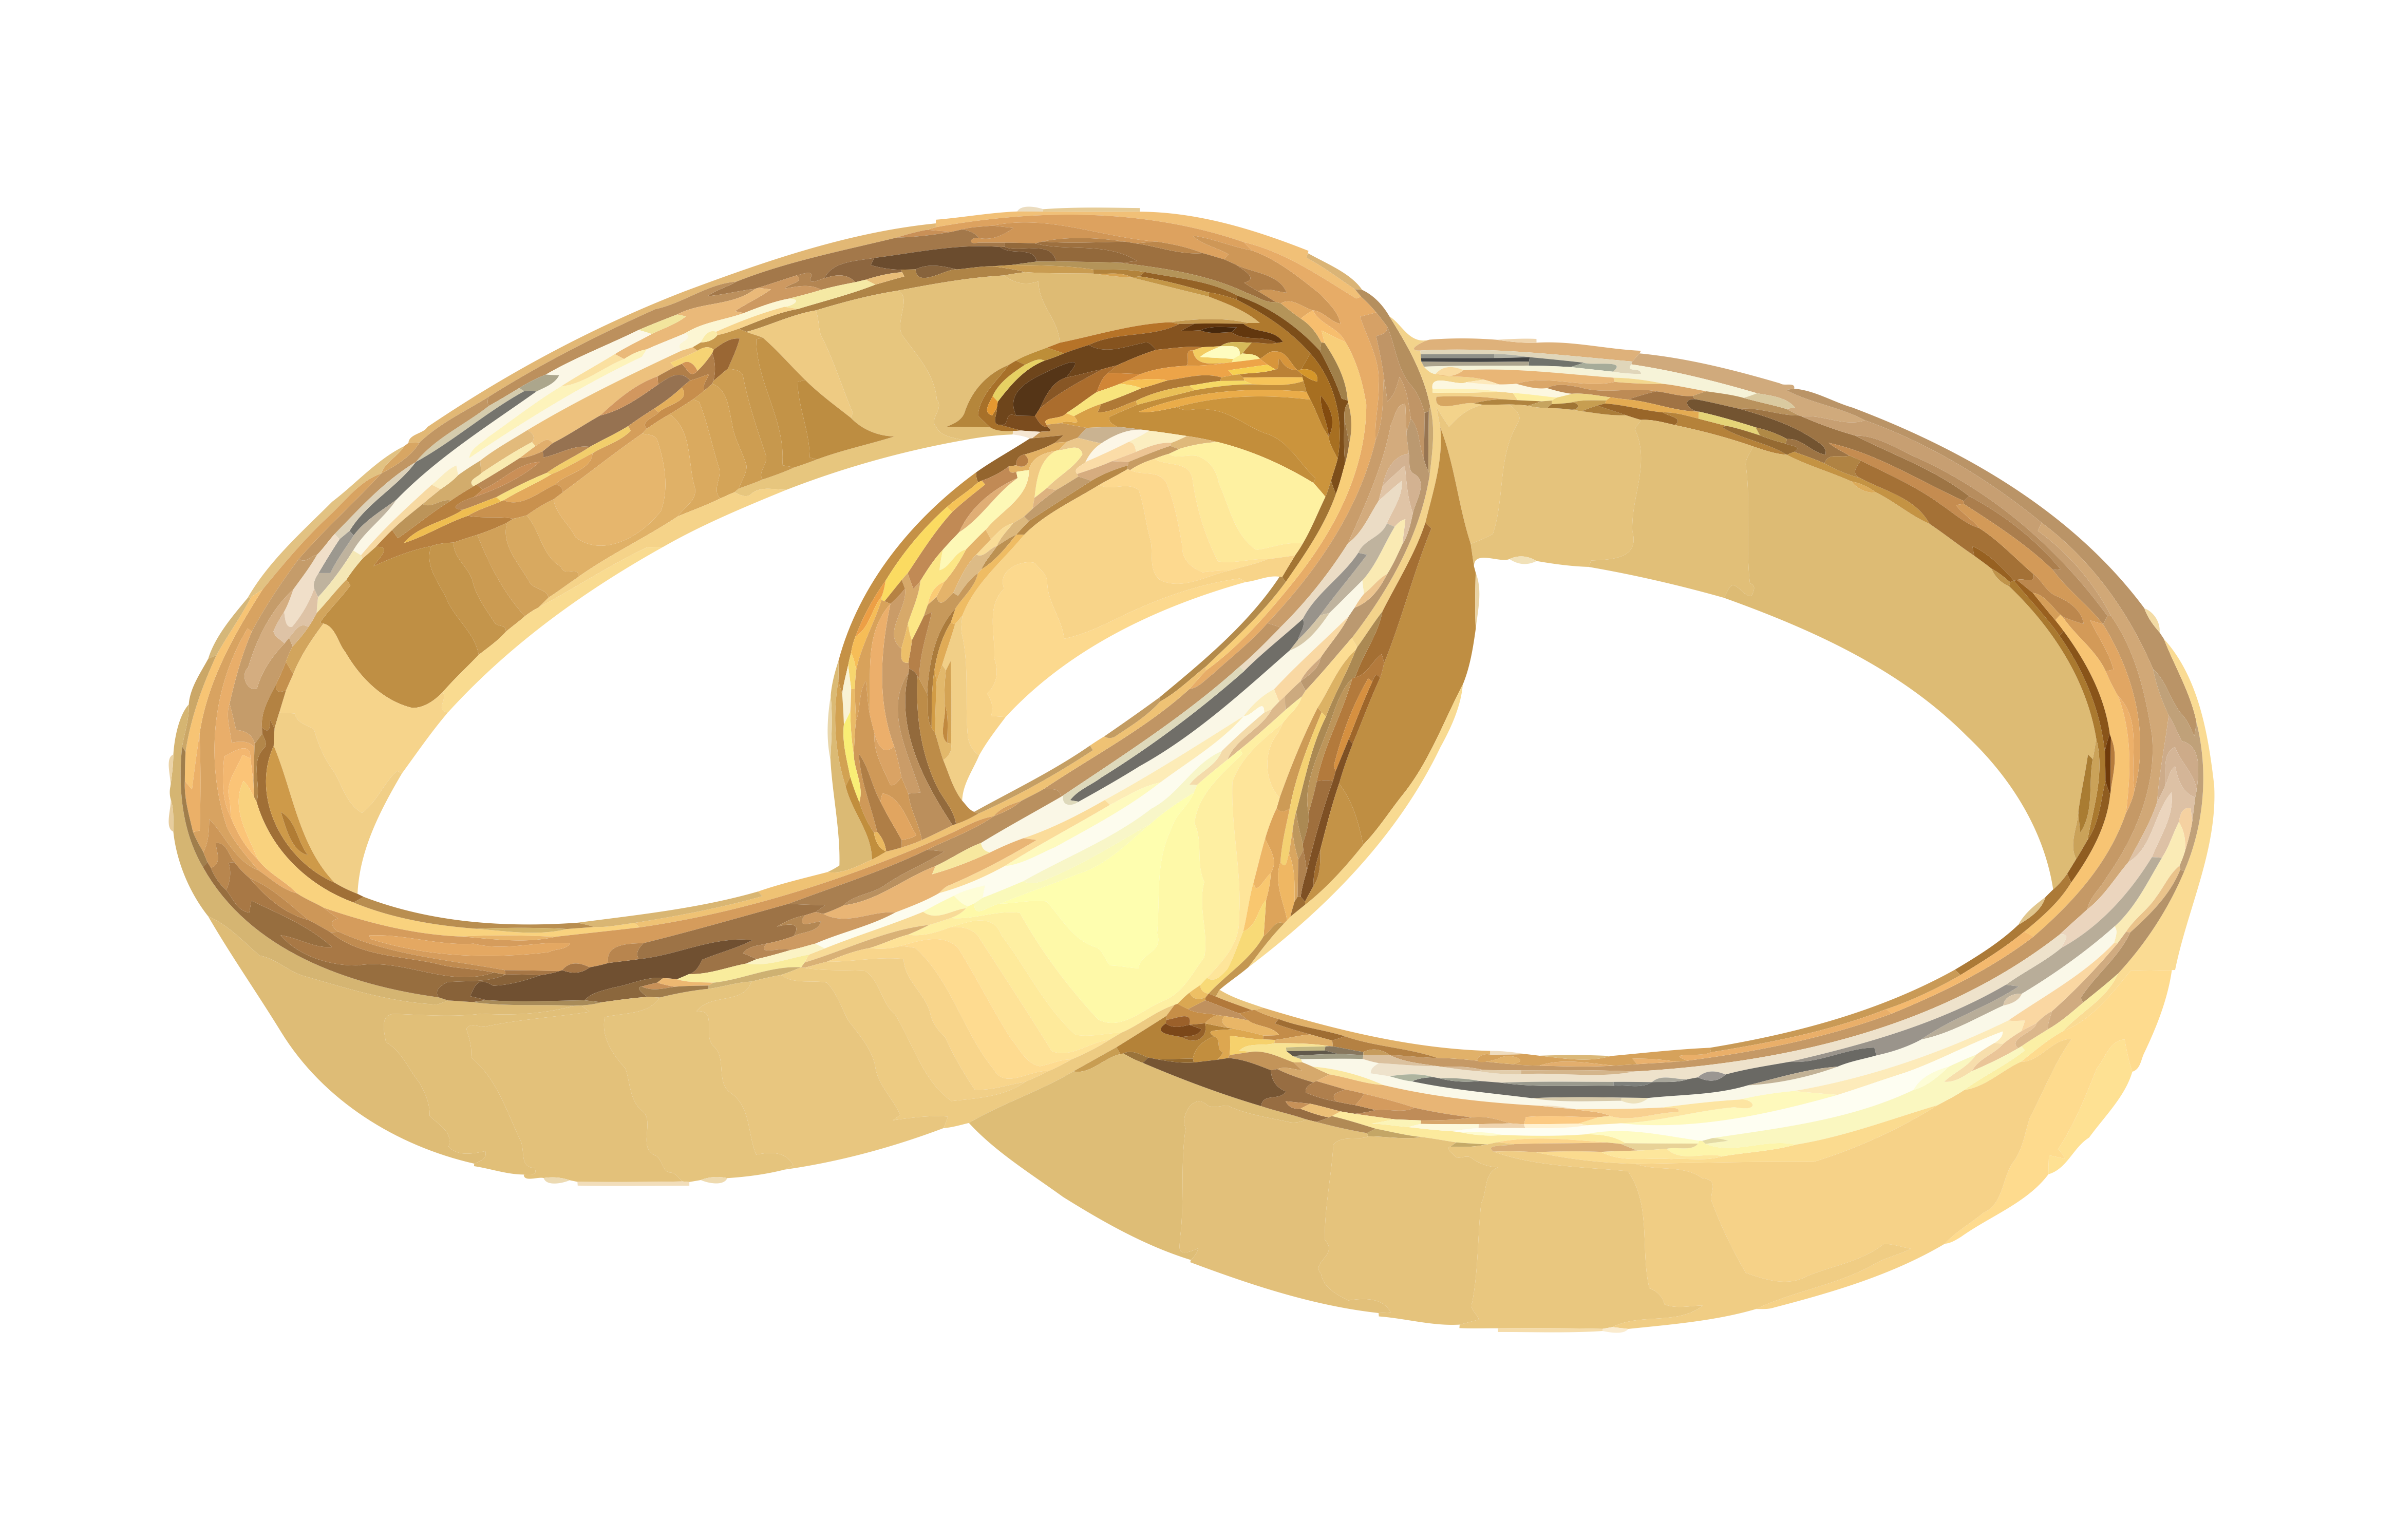 Wedding wedding ring marriage ring free image download